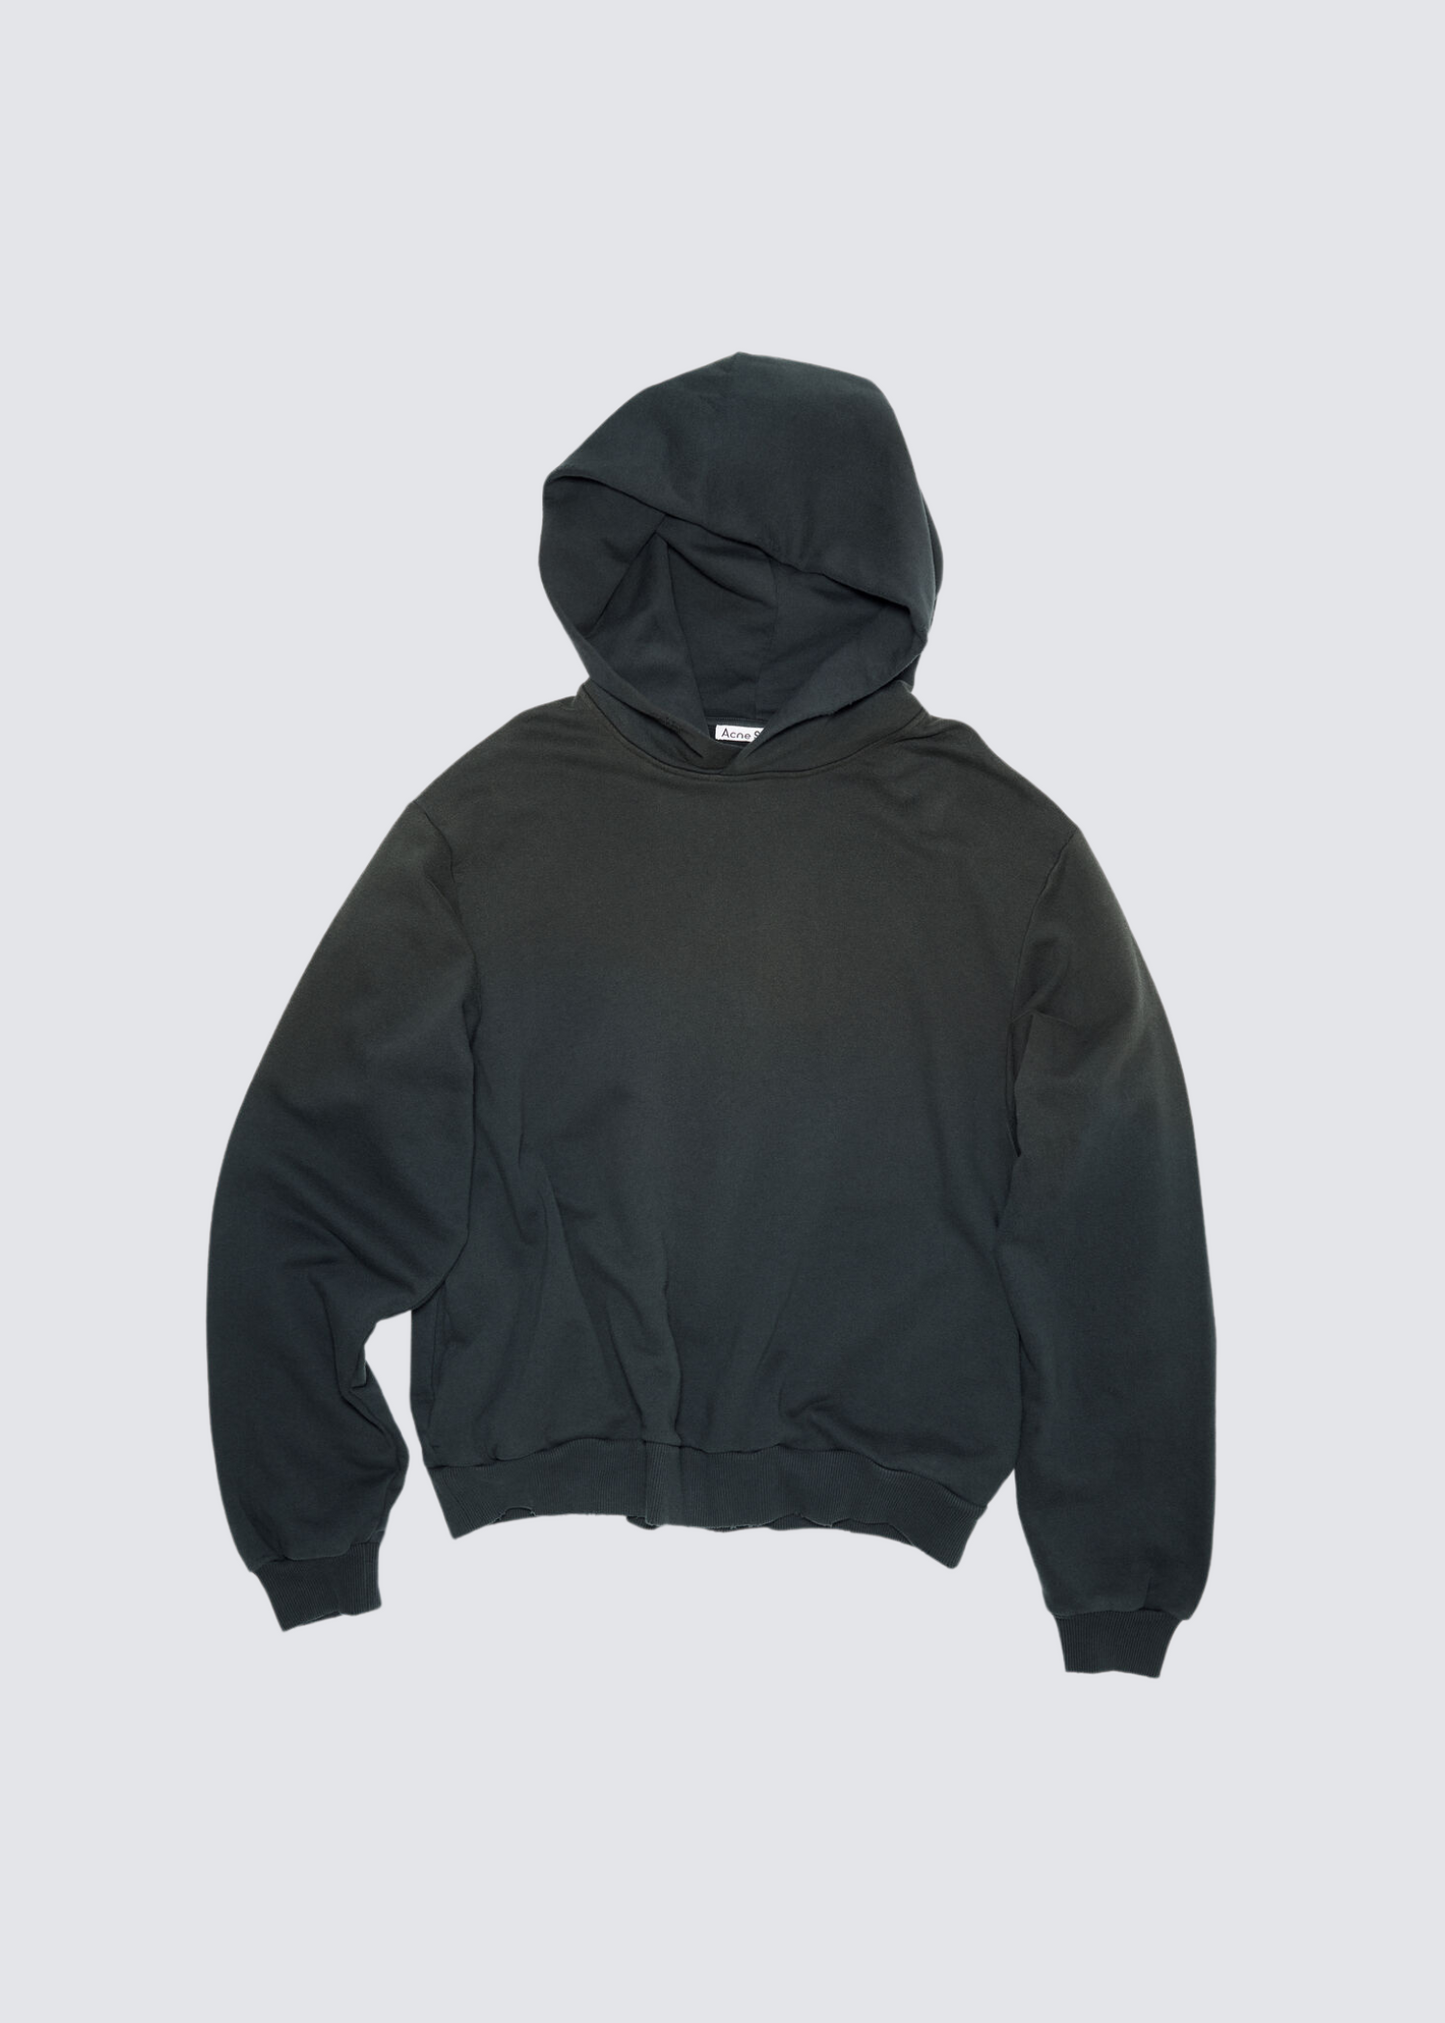 Printed, Black, Hooded Sweatshirt